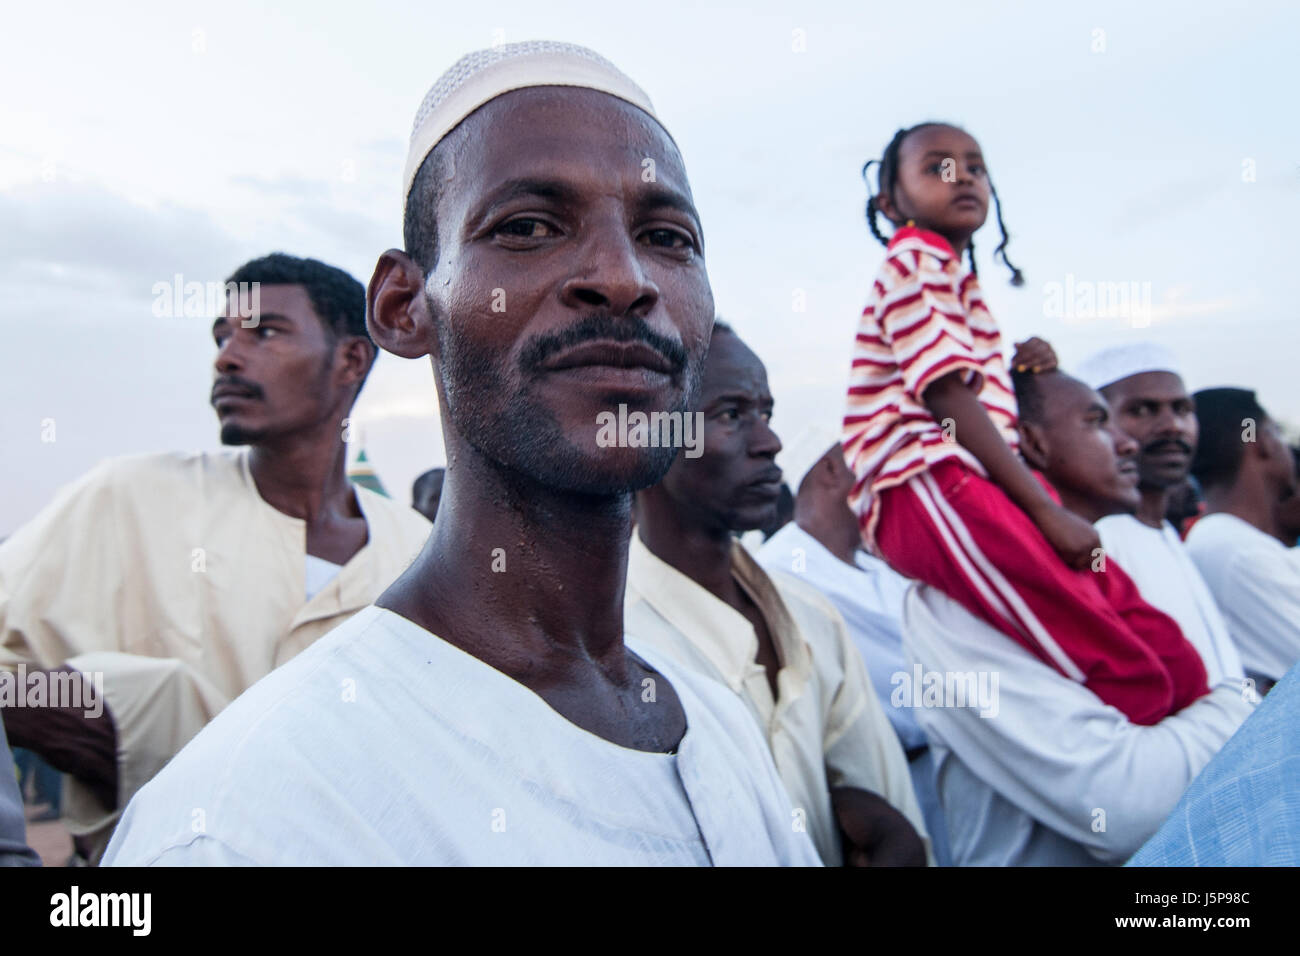 Soudan, OMDOURMAN : chaque vendredi les soufis d'Omdurman, l'autre moitié de la capitale du nord du Soudan, Khartoum, se rassemblent pour leur 'dhikr' - chant et Dancers Banque D'Images